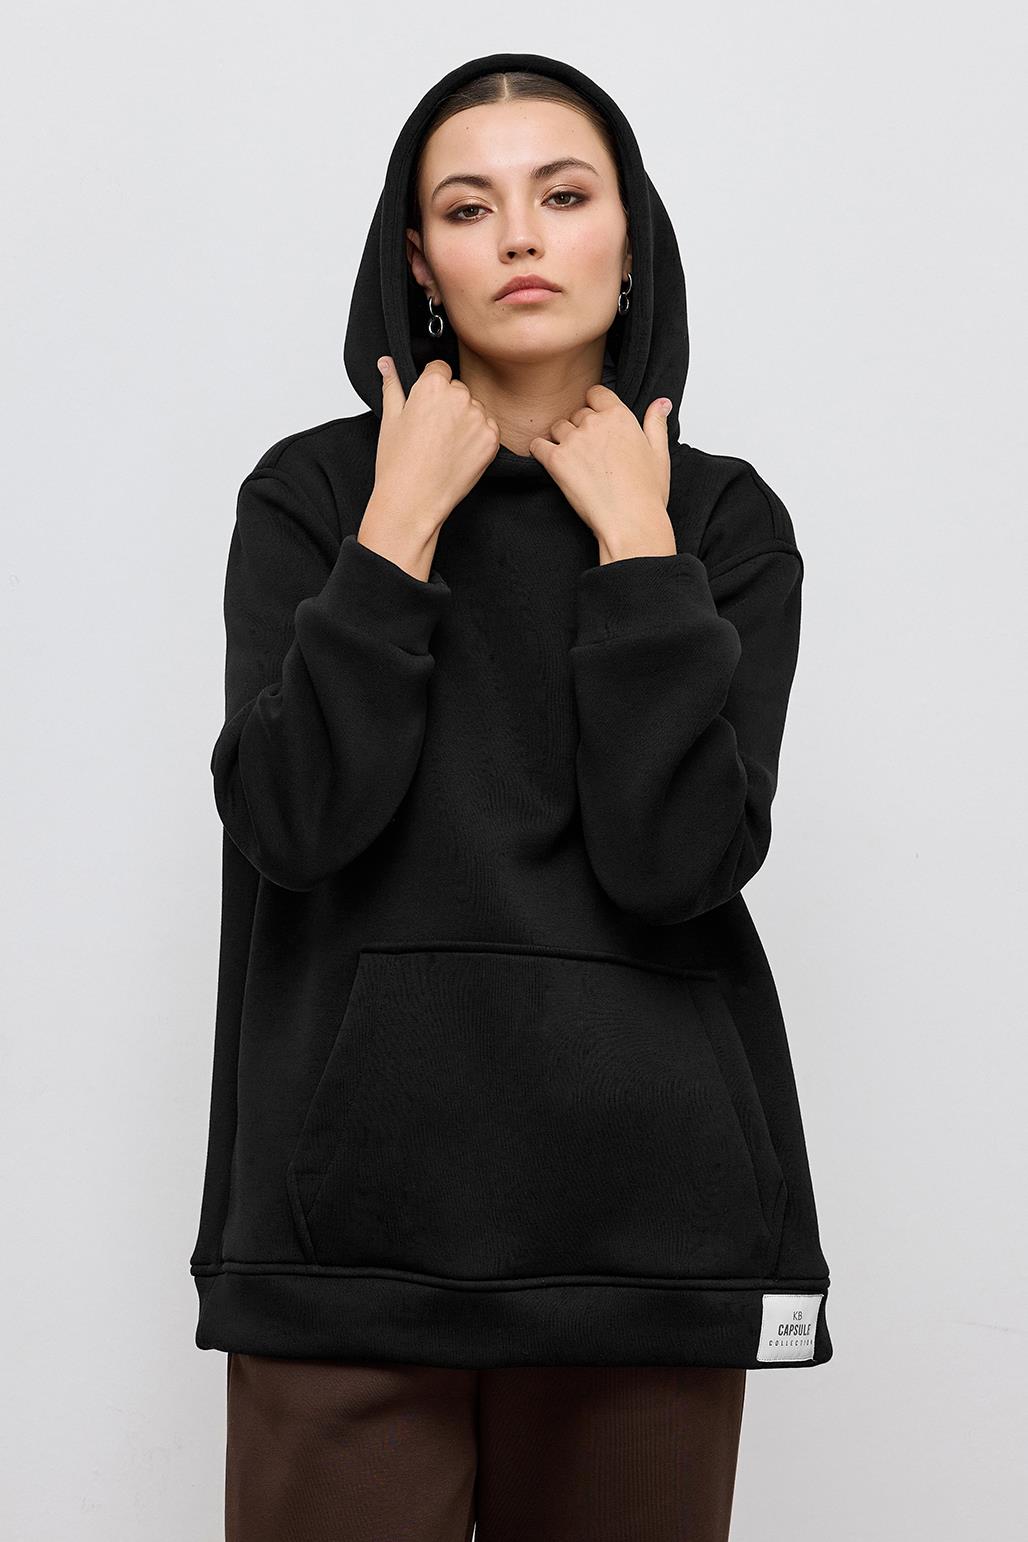 Fleece Hooded Sweatshirt With Pocket Black